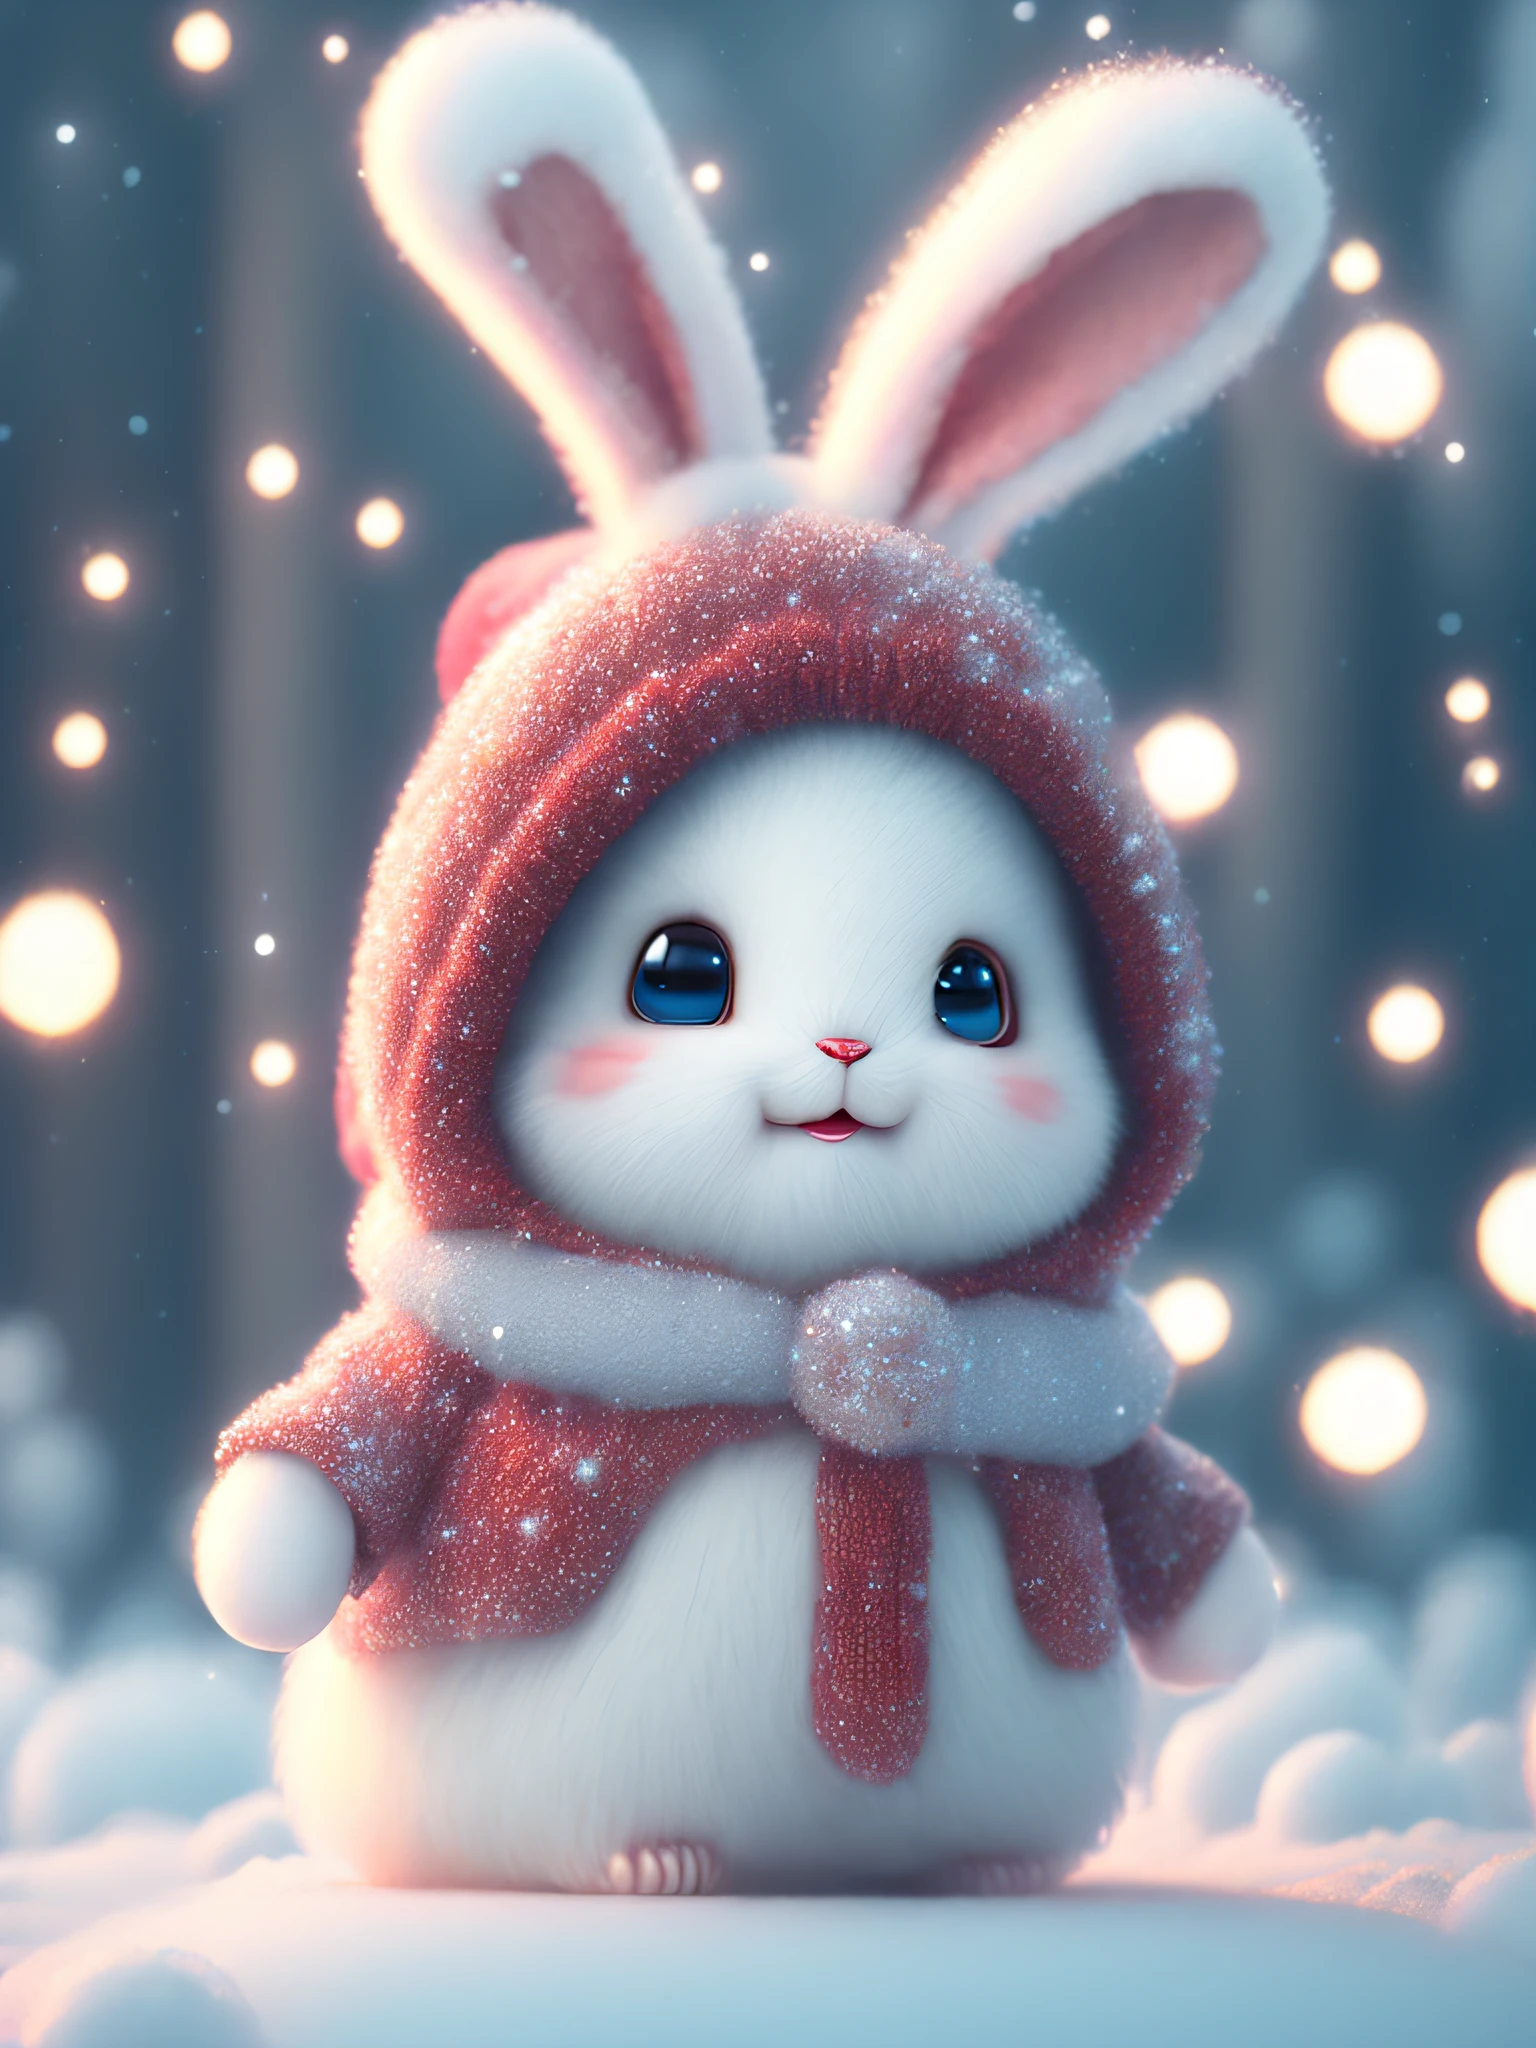 充滿遺憾的冬天, 飄雪, super cute 皮克斯風格 little white rabbit, 閃閃發光 雪白 蓬鬆, 明亮的大眼睛, 毛茸茸的尾巴, 穿著紅色毛衣, 戴著紅帽子, 微笑著, 複雜的, 童話, 令人難以置信的高細節, 皮克斯風格, 气泡, 鮮豔的色彩, 自然光, 簡單的純色背景, 電影鏡頭, 5.辛烷值渲染, 藝術站趨勢, 華麗的, 超廣角, 8K, 高畫質逼真, 8K HD, 手機圖片, v 4 q 2 2